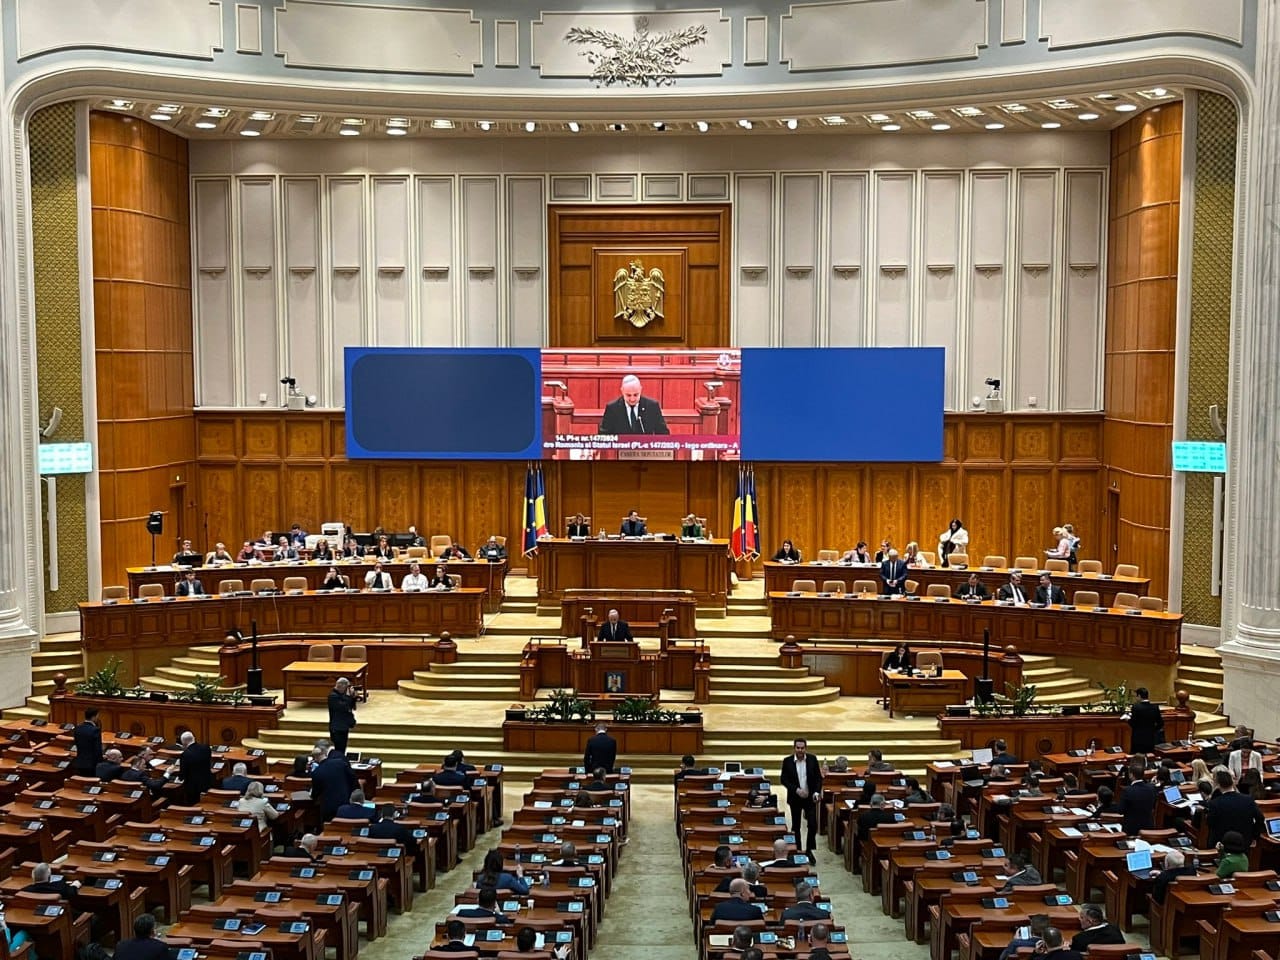 Израильская Правда. Парламент Румынии 🇷🇴 принял закон, устанавливающий 14 мая Национальным днем дружбы и солидарности между Румынией и государством Израиль